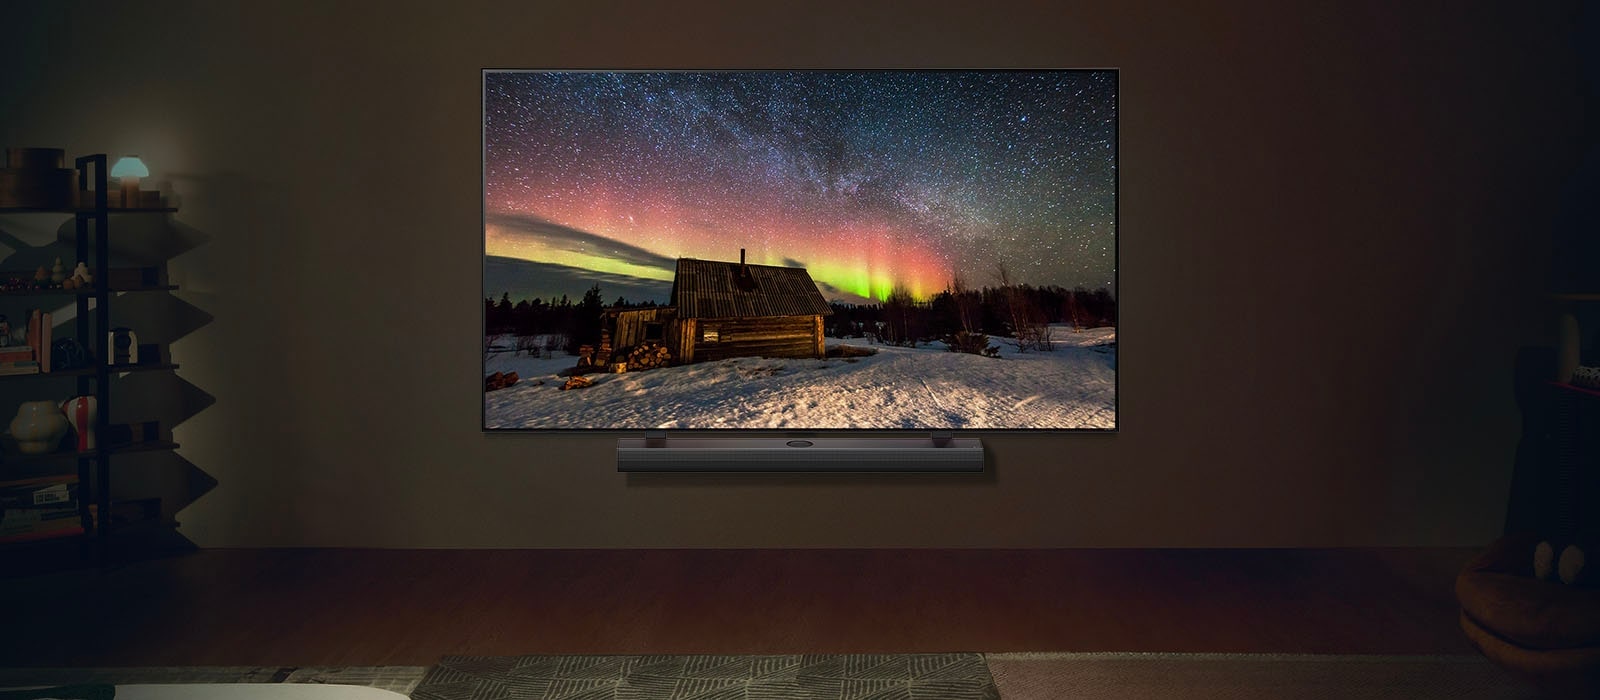 LG TV et LG Soundbar dans un espace de vie moderne pendant la nuit. L'image de l'aurore boréale est affichée avec les niveaux de luminosité idéaux.